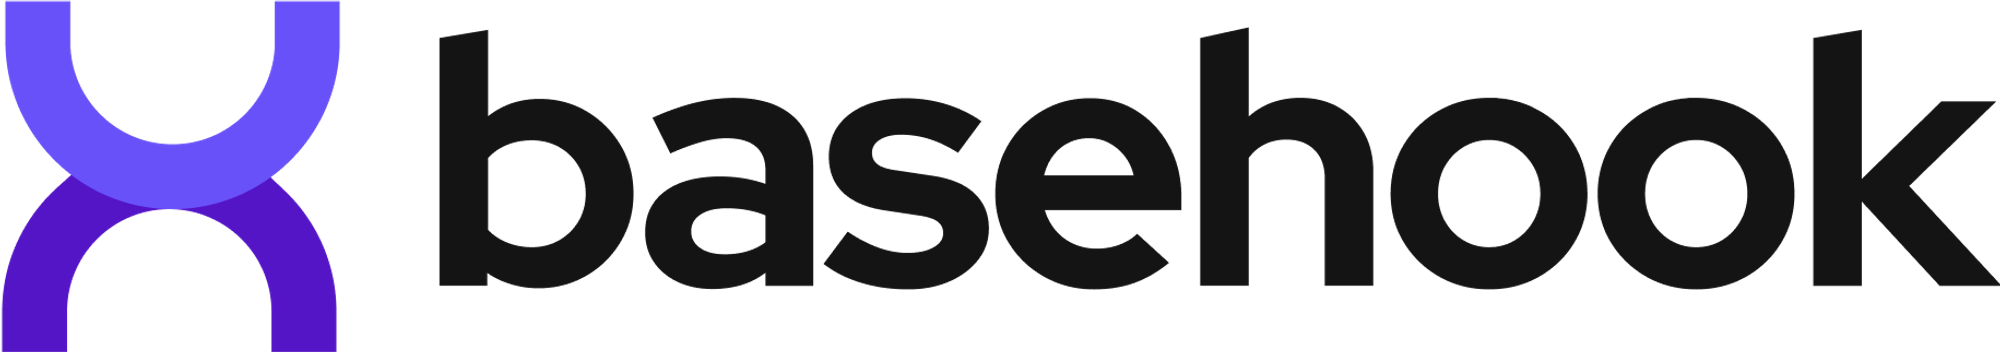 Modern logo design for basehook.com